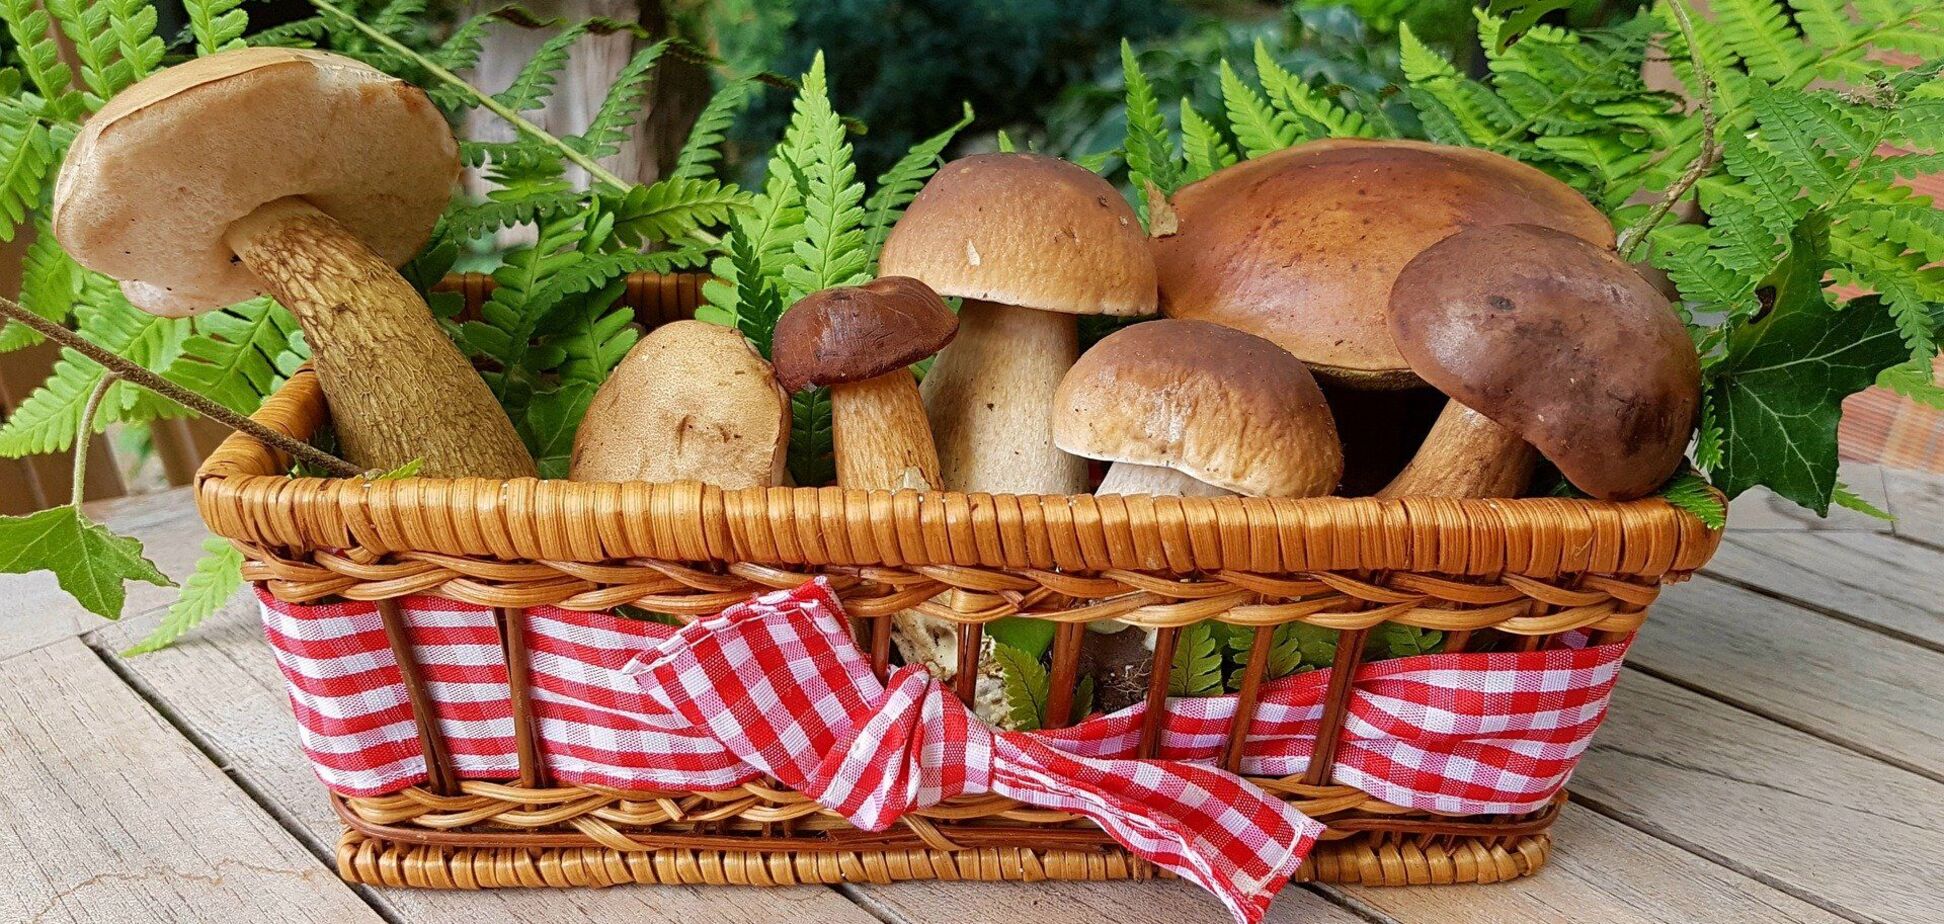 Як приготувати смачний маринад для грибів